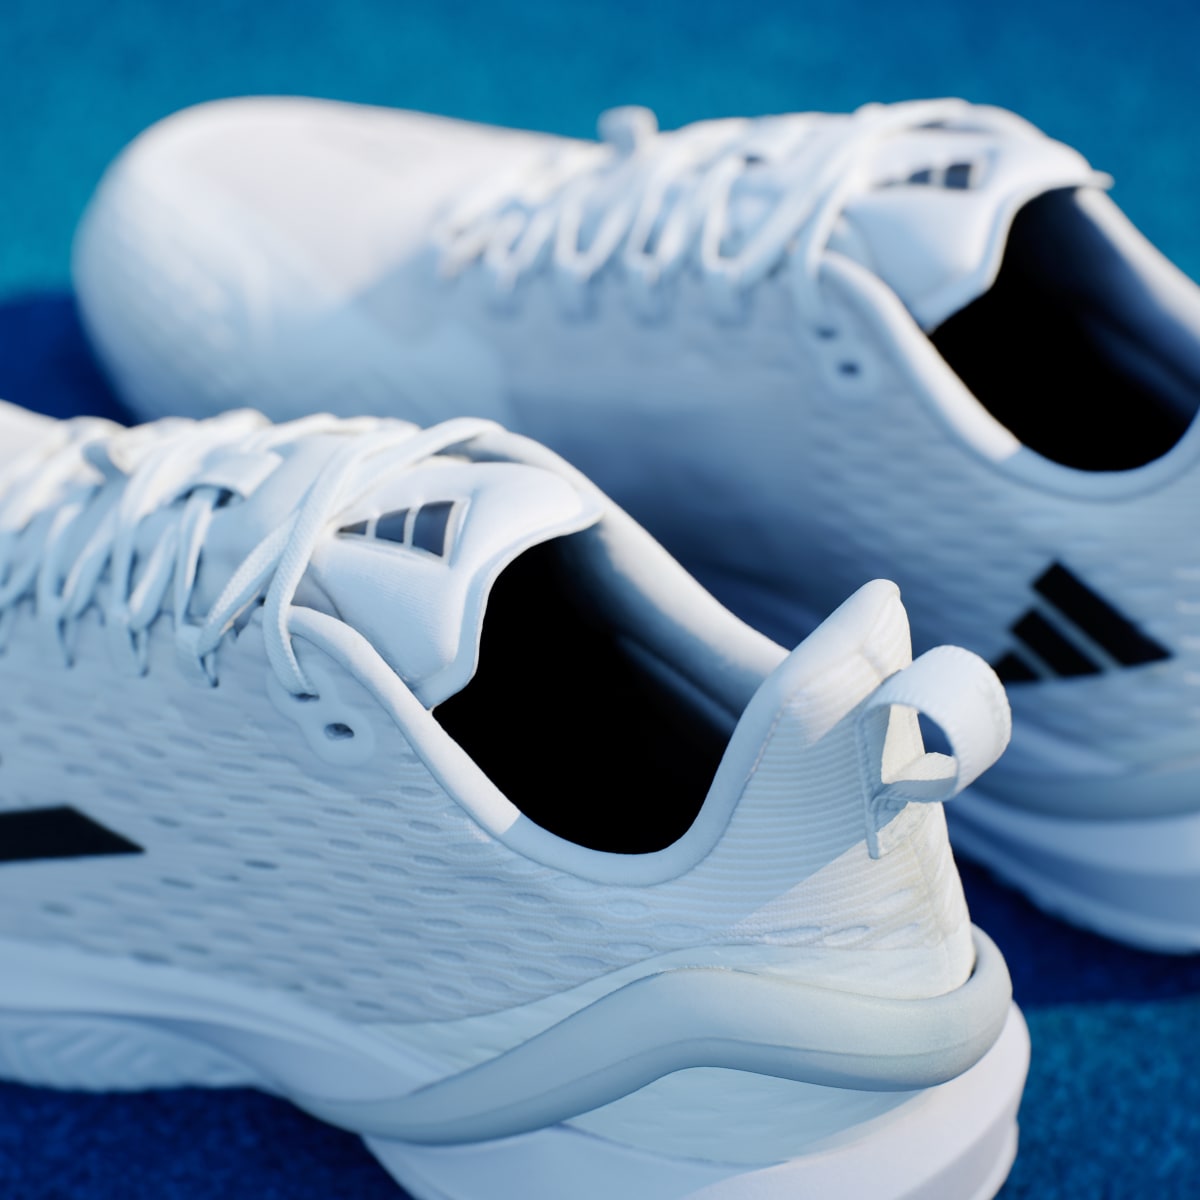 Adidas Adizero Cybersonic Tennis Shoes. 9